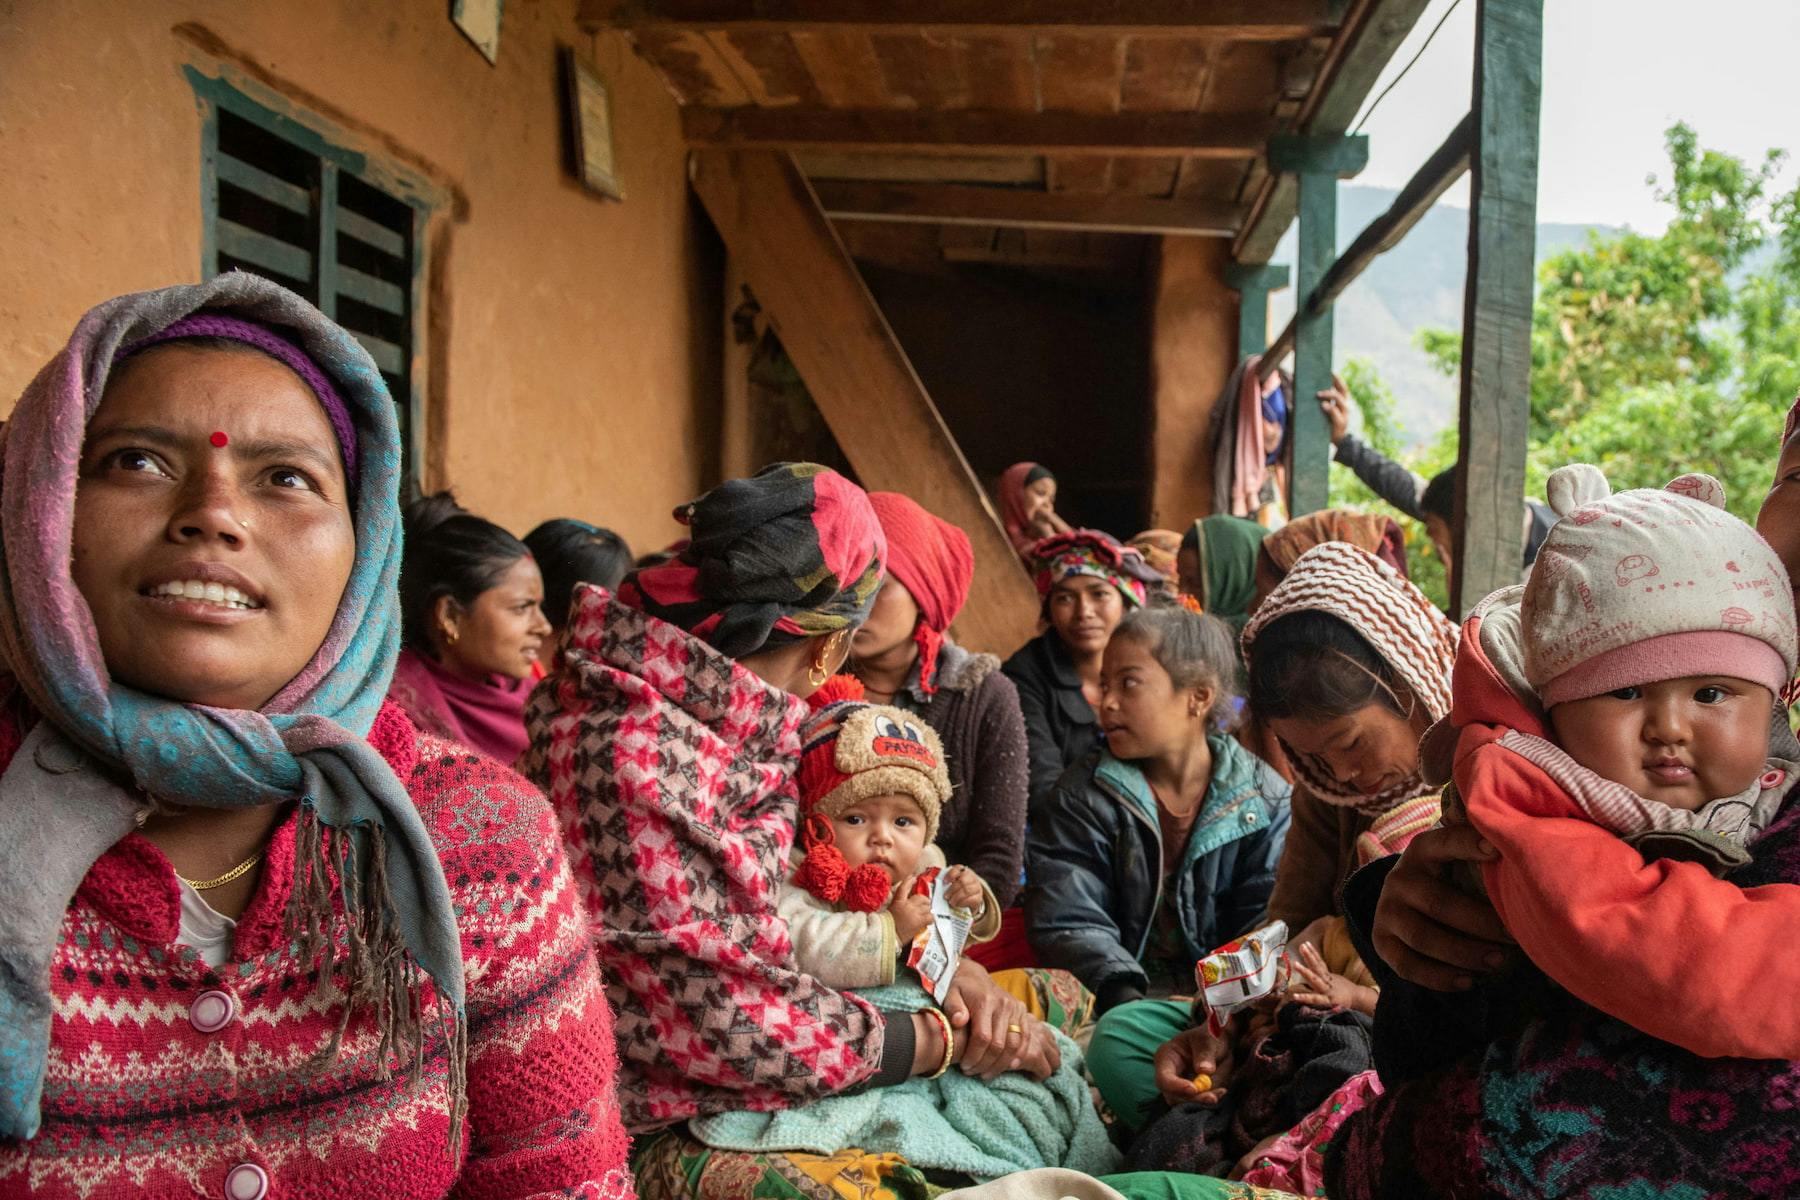 Auf dem Bild sind Mütter und ihre Kinder in Nepal zu sehen. Sie sitzen eng beieinander unter einem Dach. Sie sind winterlich und bunt gekleidet.